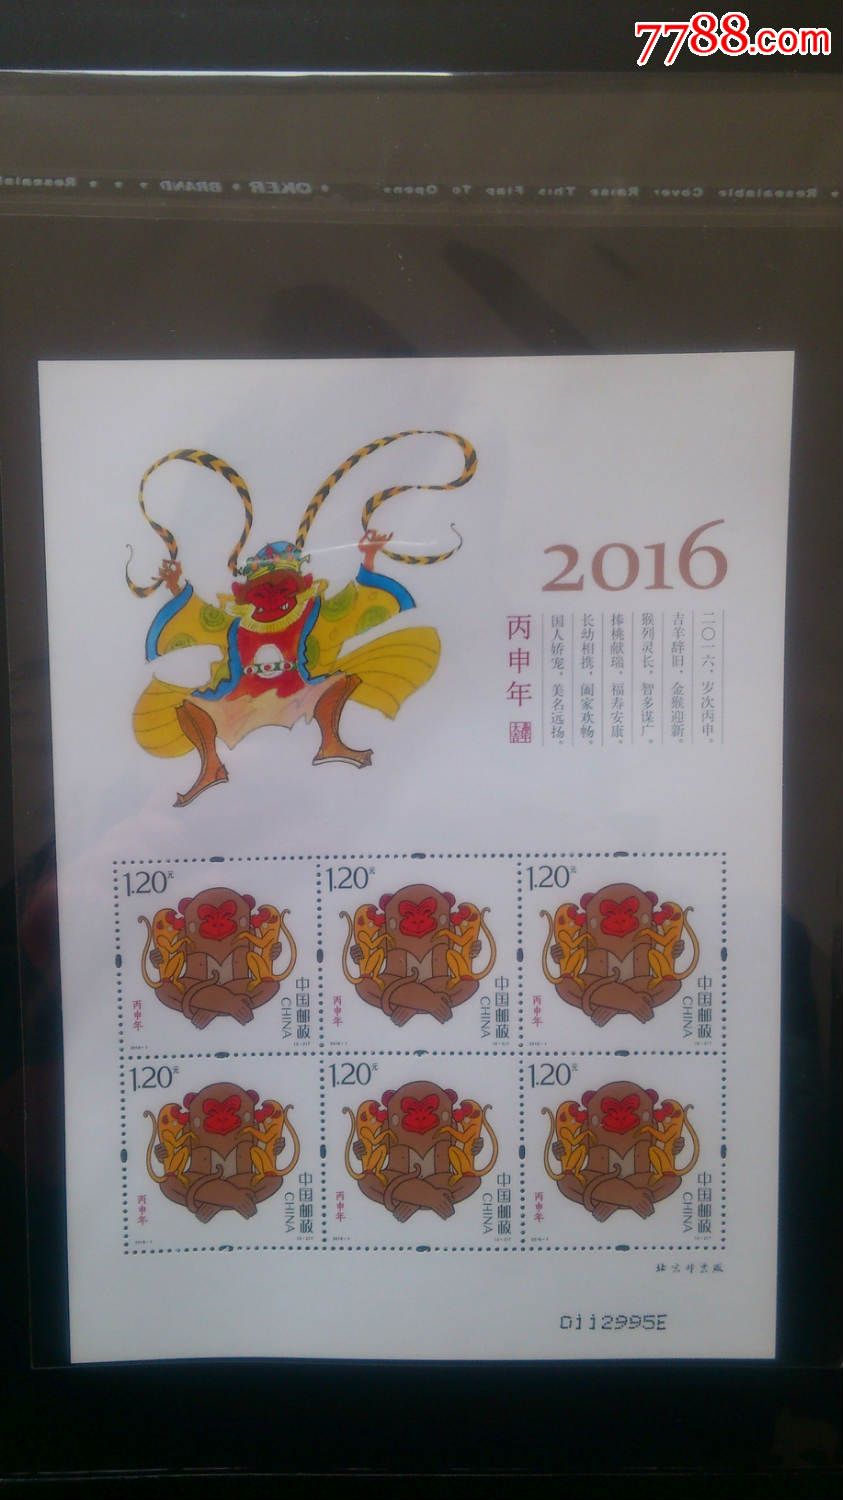 2016-1第四轮生肖邮票-丙申猴年生肖猴票小版